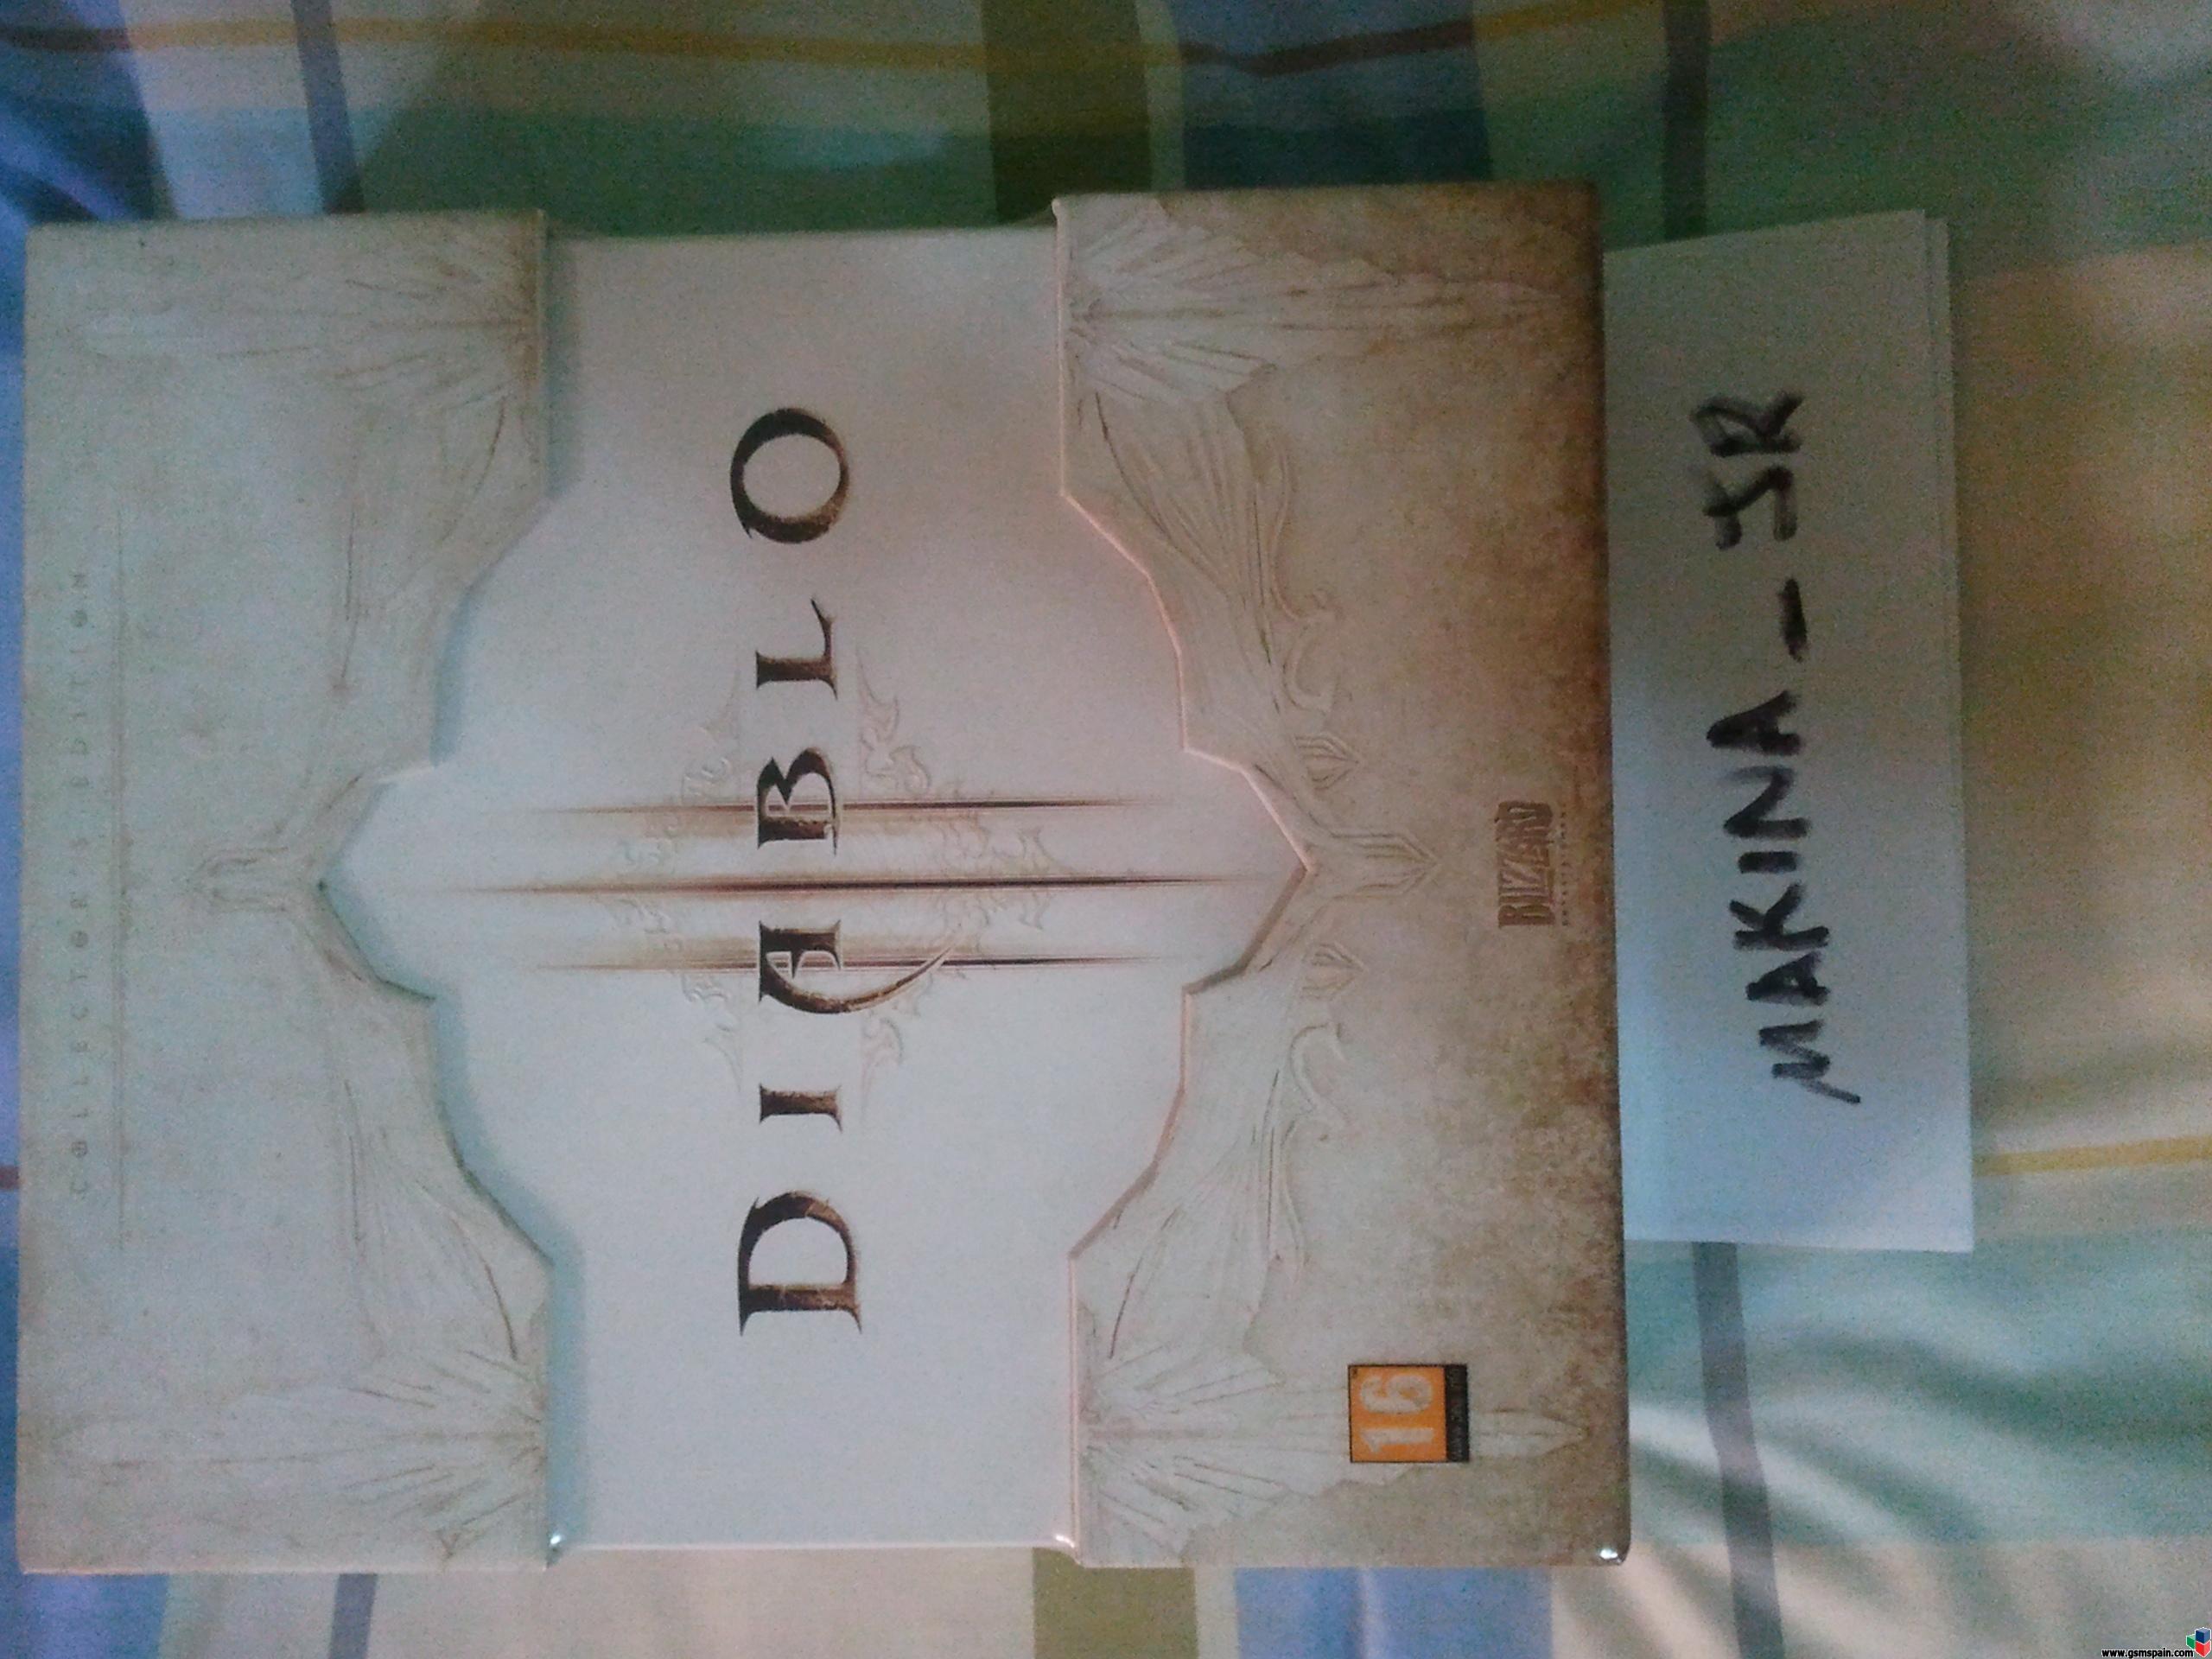 [VENDO] Edicion Coleccionista del Diablo III